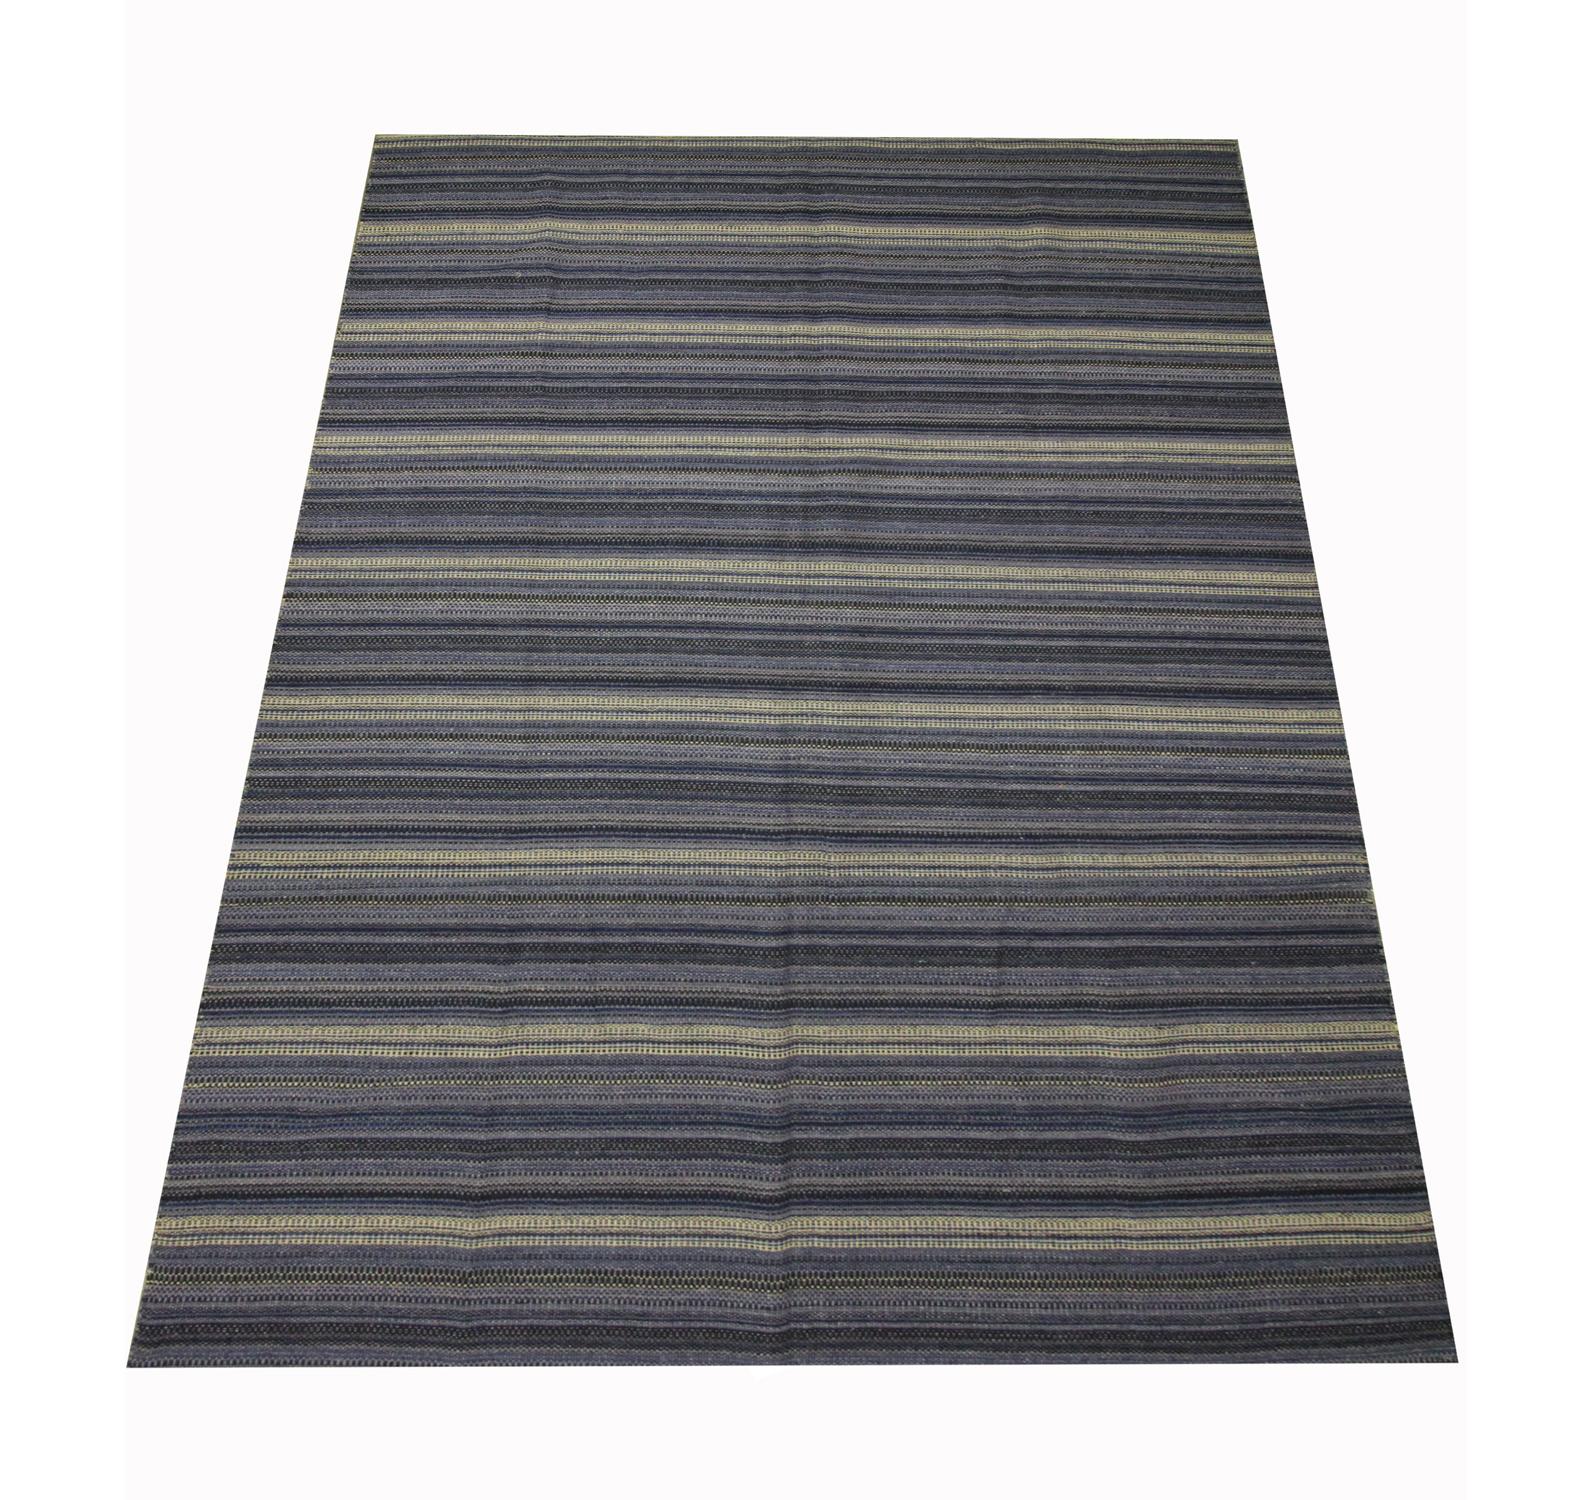 Ce tapis à rayures audacieuses est un kilim tissé à plat, tissé à la main au début du 21e siècle. Le design présente un motif abstrait coloré tissé dans des accents de jaune, gris et noir. La couleur et le design font de cette pièce le tapis